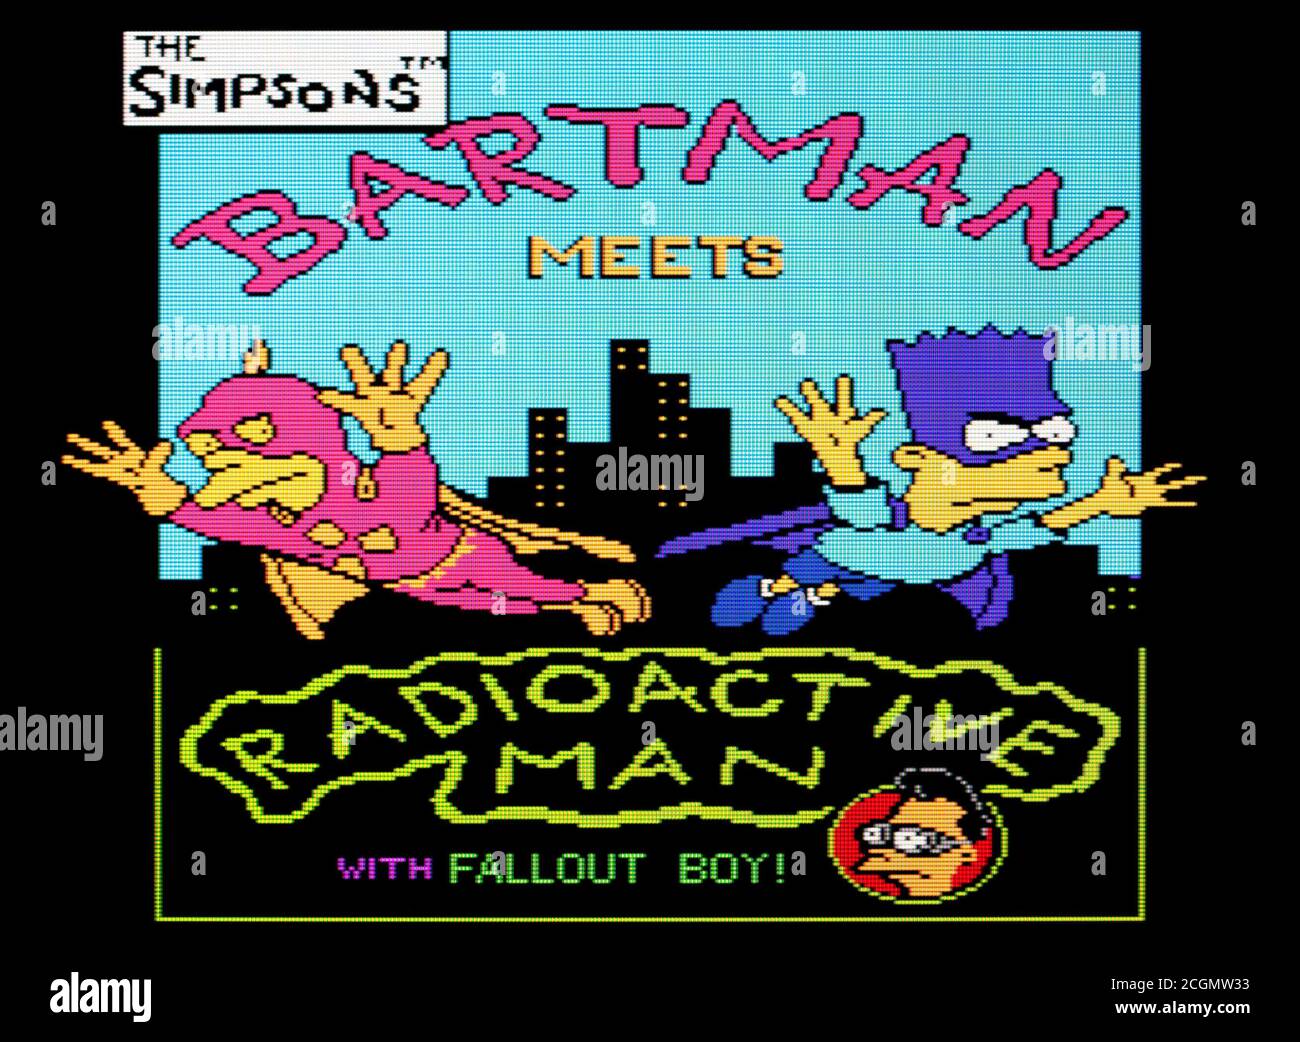 Die Simpsons Bartman trifft radioaktiven Mann mit Fallout Boy! - Nintendo Entertainment System - NES Videogame - nur zur redaktionellen Verwendung Stockfoto